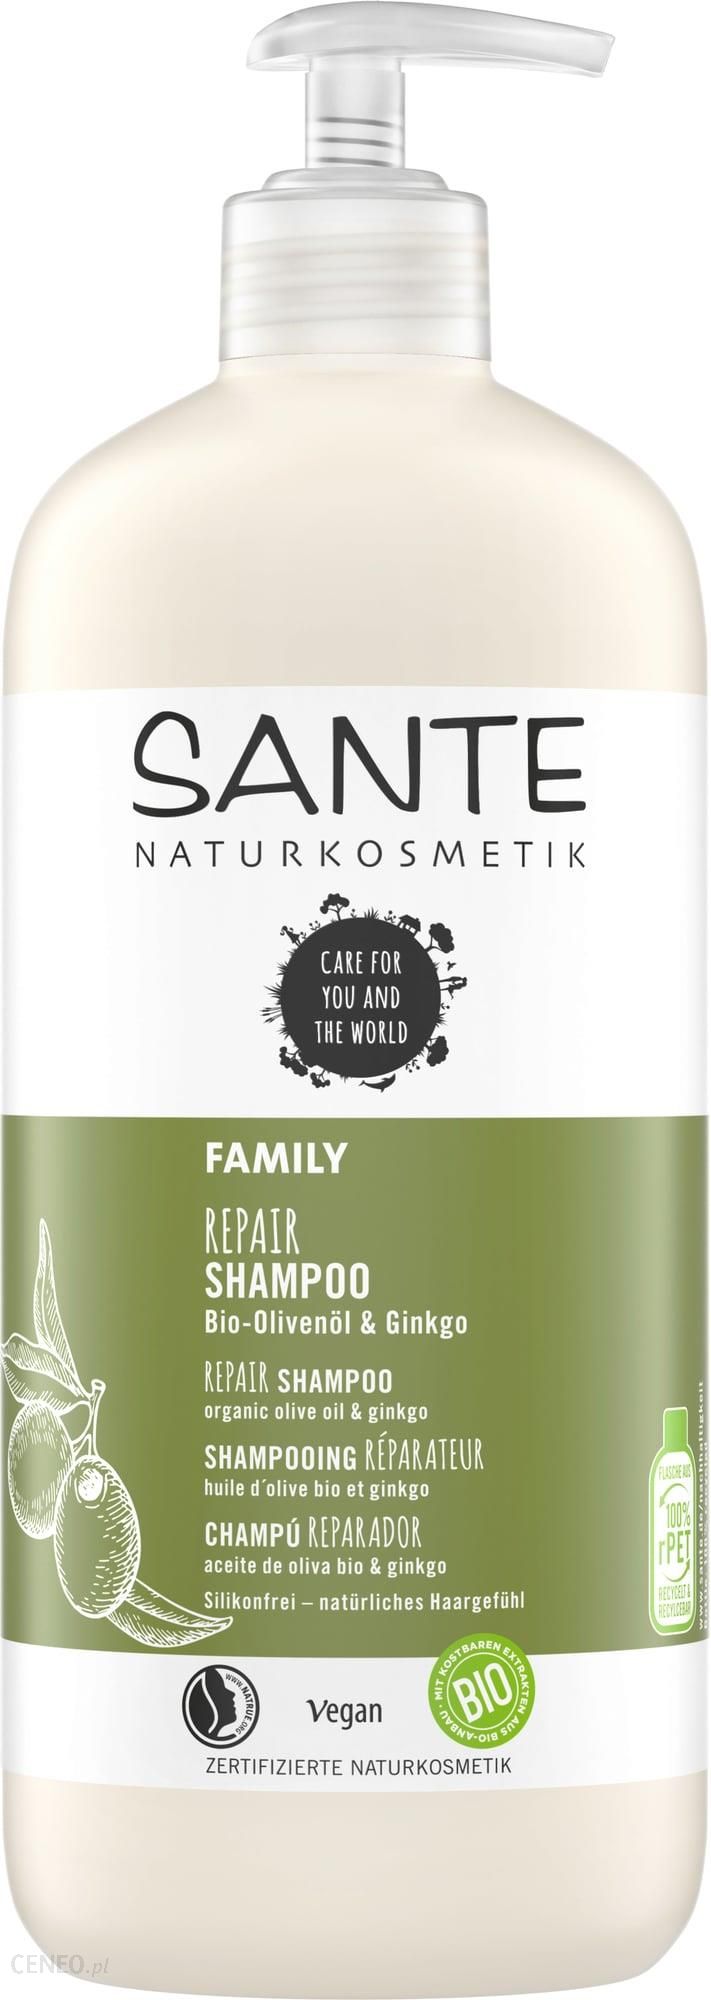 Sante Family Szampon z organicznym miłorzębem i oliwą 500ml